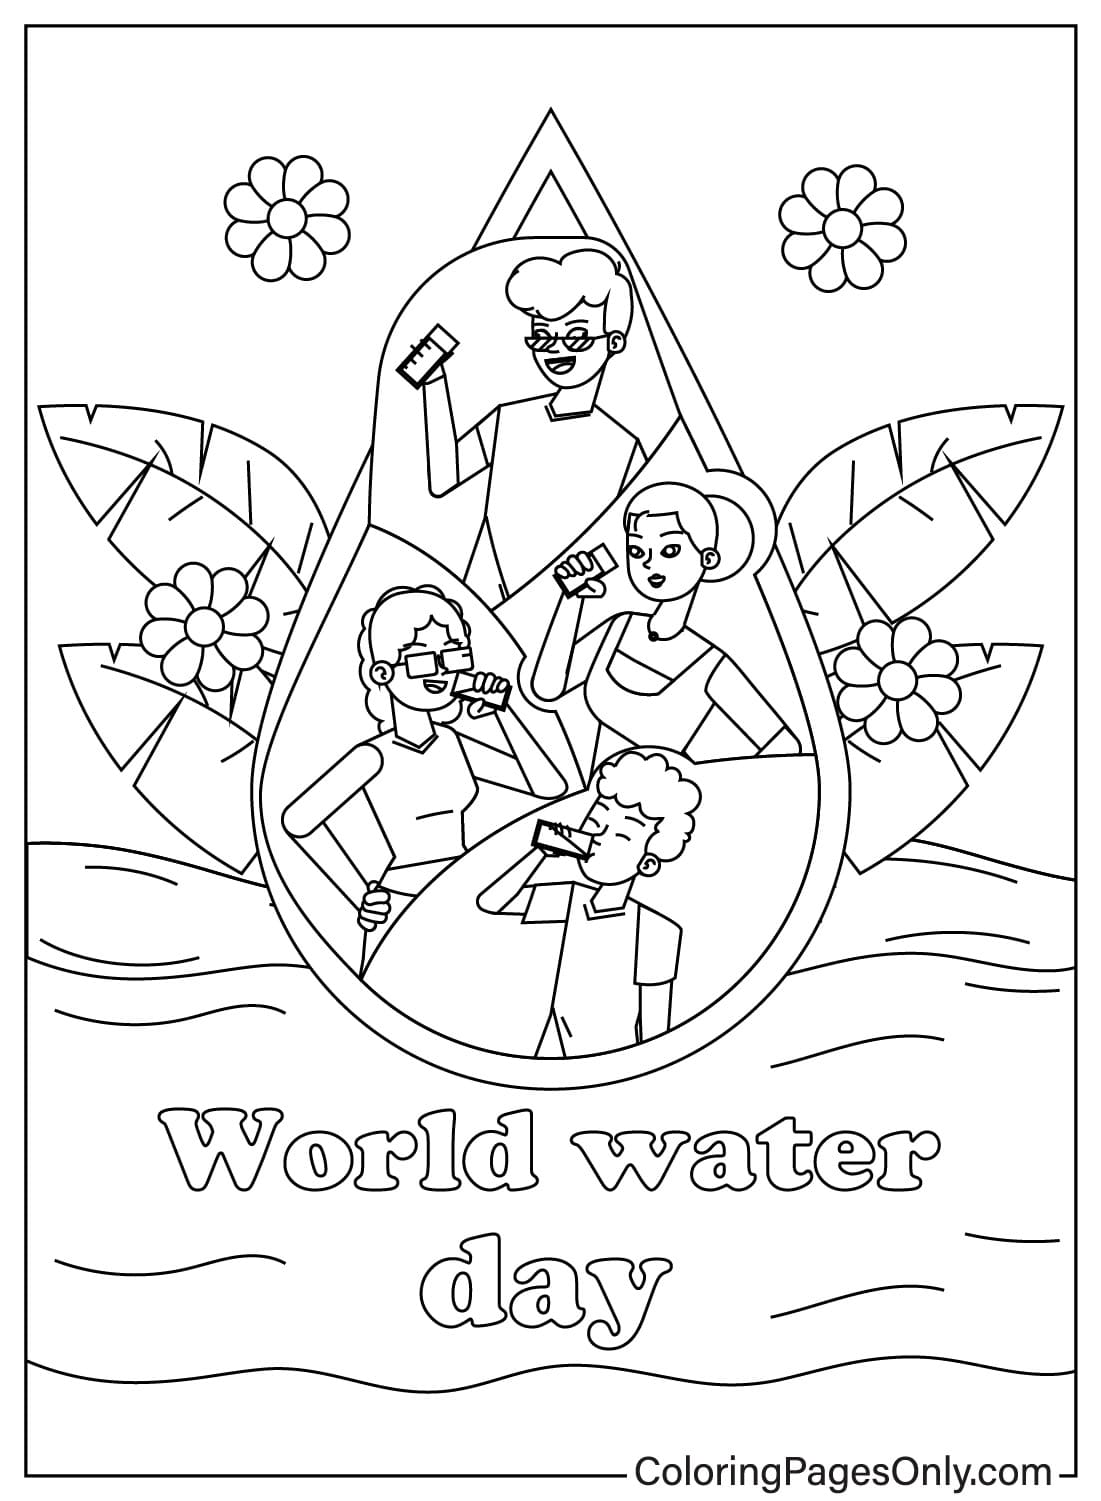 Hoja para colorear del Día Mundial del Agua para niños del Día Mundial del Agua